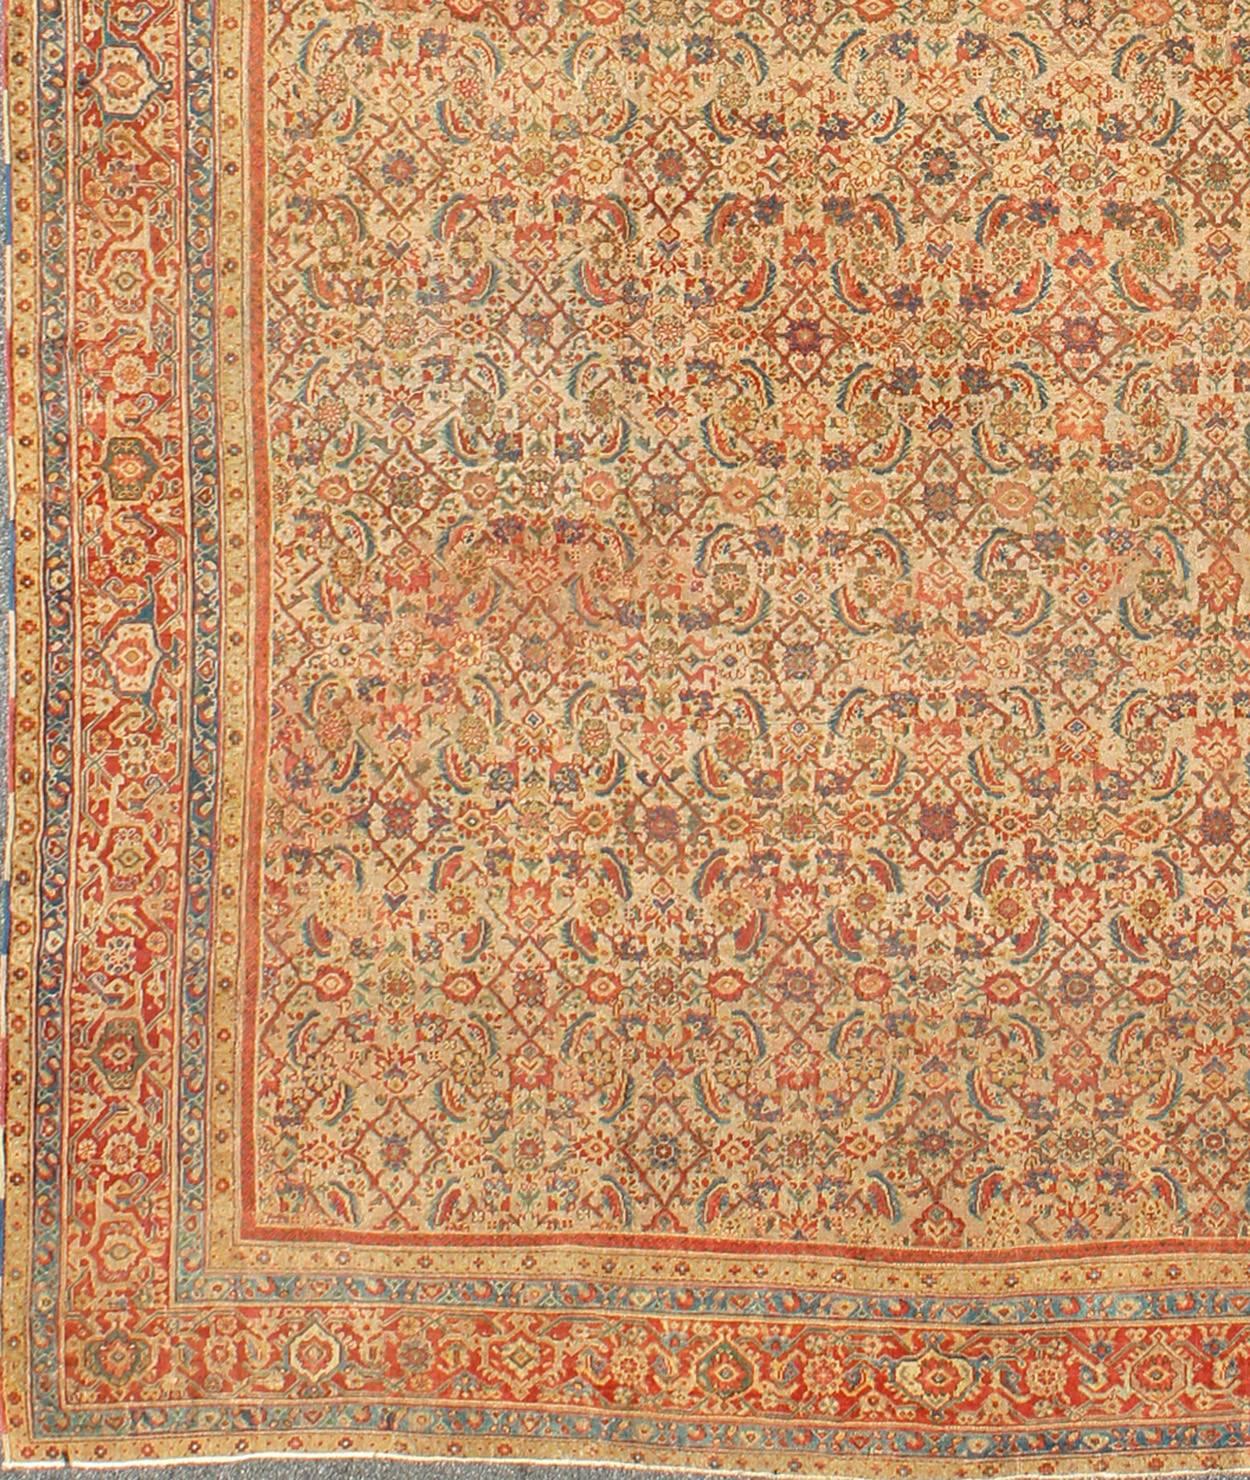 Grandiose tapis persan ancien de type Sultanabad en fond beige, rouge rouille, vert, bleu et couleurs multiples. Ce Mahal Sultanabad antique très sophistiqué illustre magnifiquement la complexité de l'artisanat et du design perse du début du siècle.